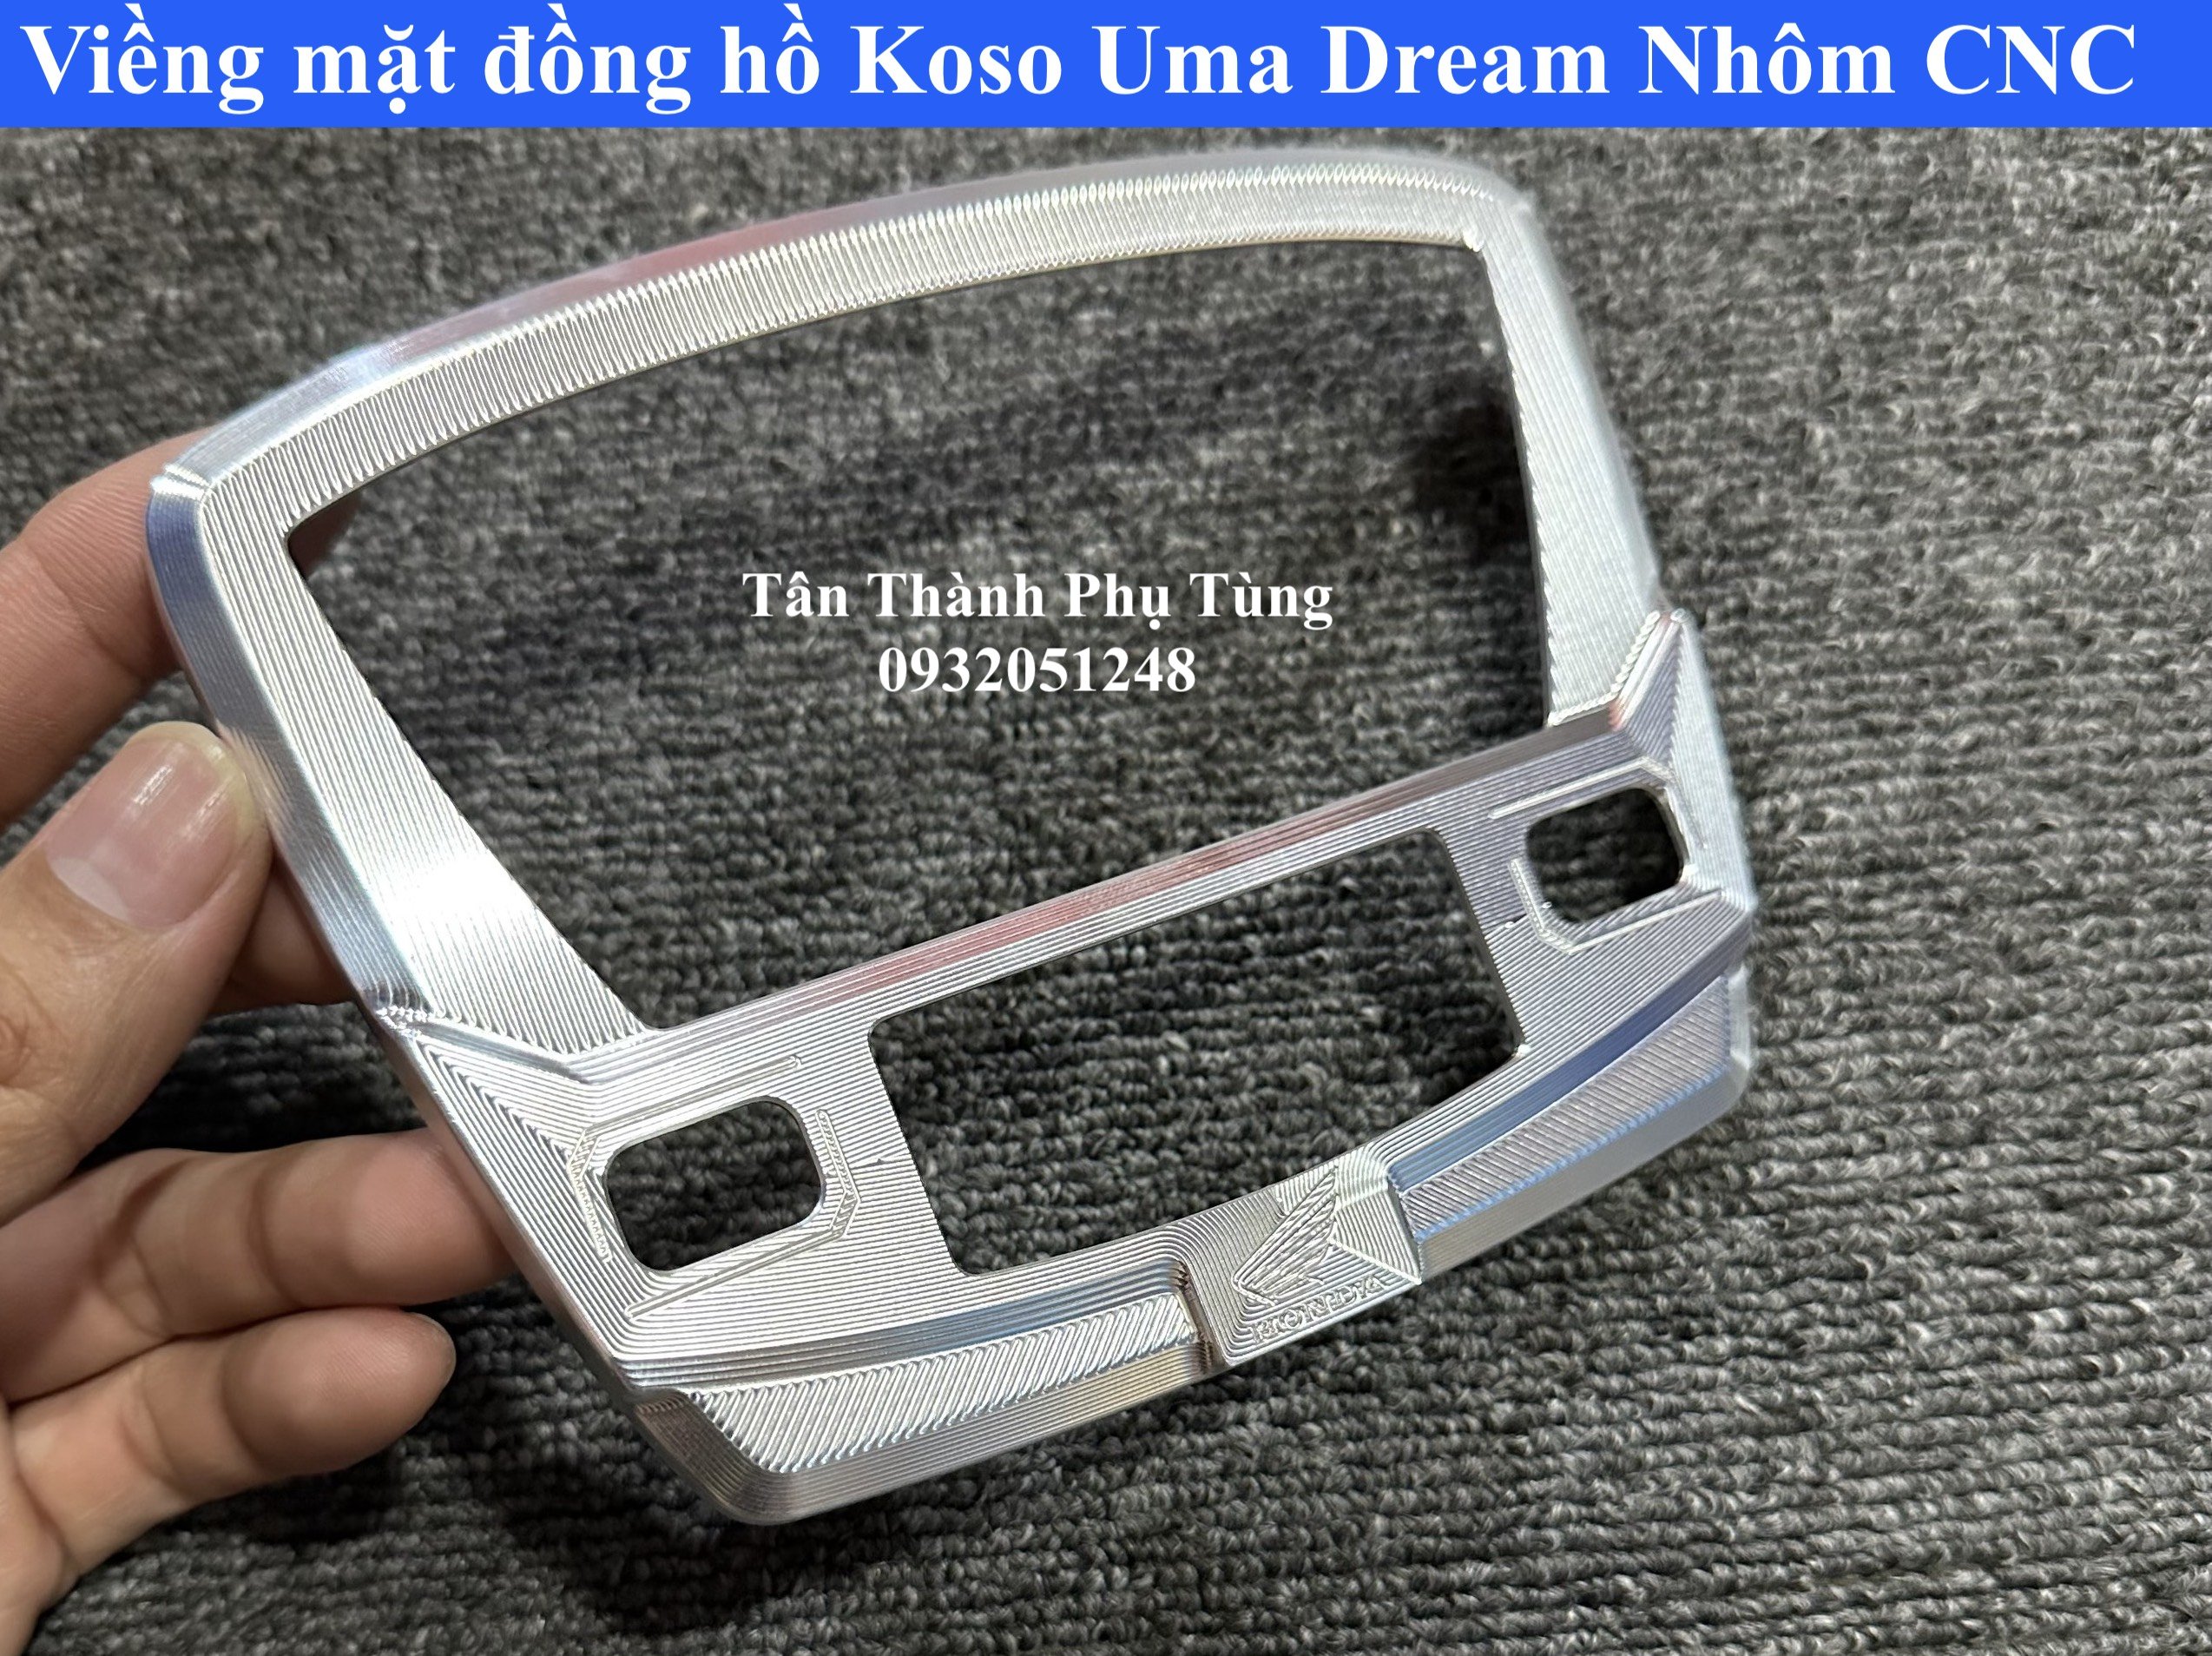 Viền đồng hồ dành cho Dream Koso Uma nhôm CNC- Màu Bạc